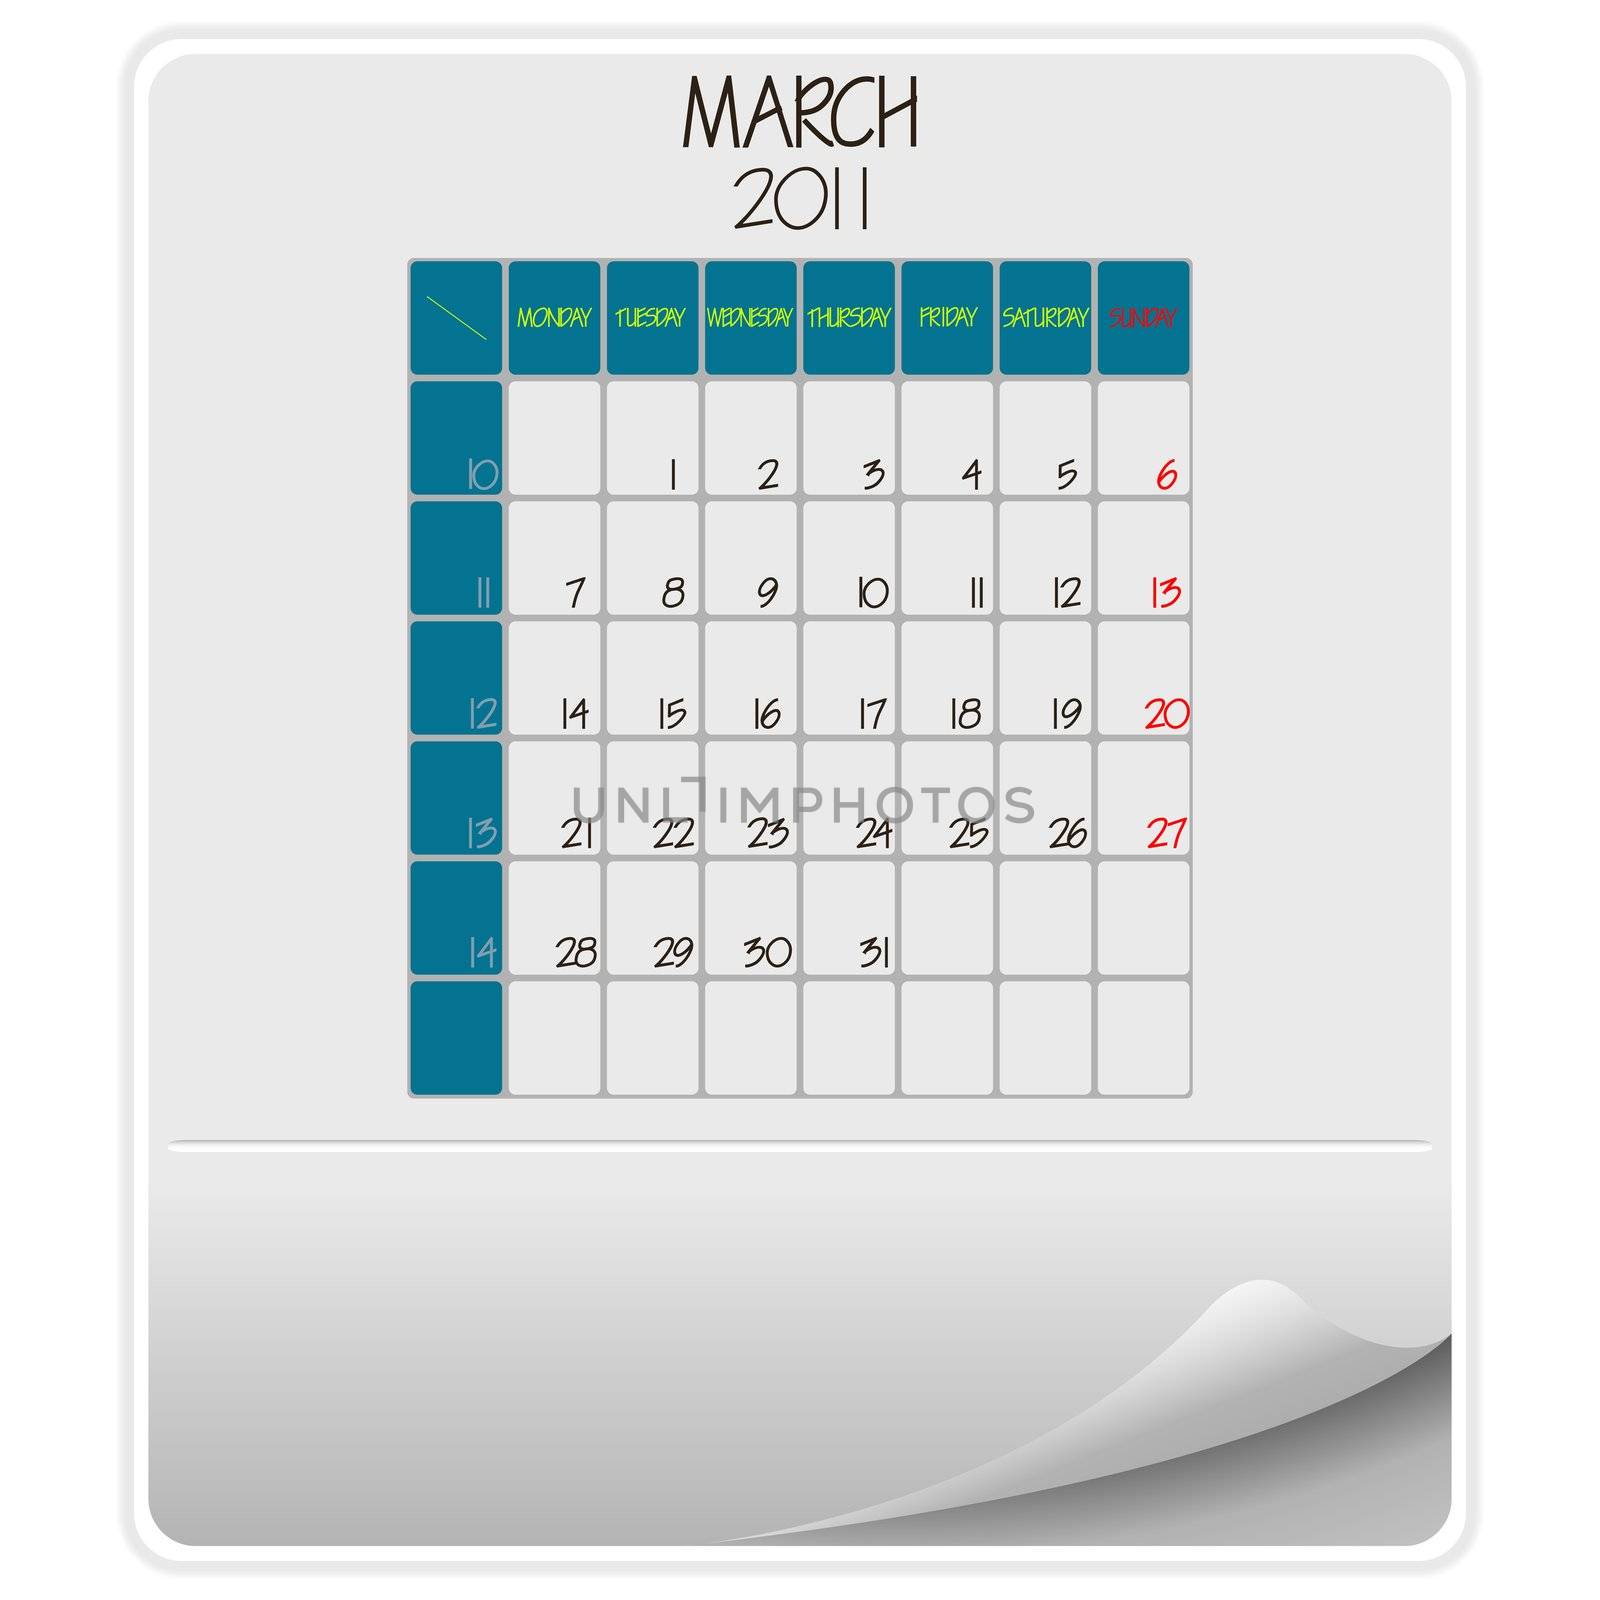 2011 calendar march by robertosch